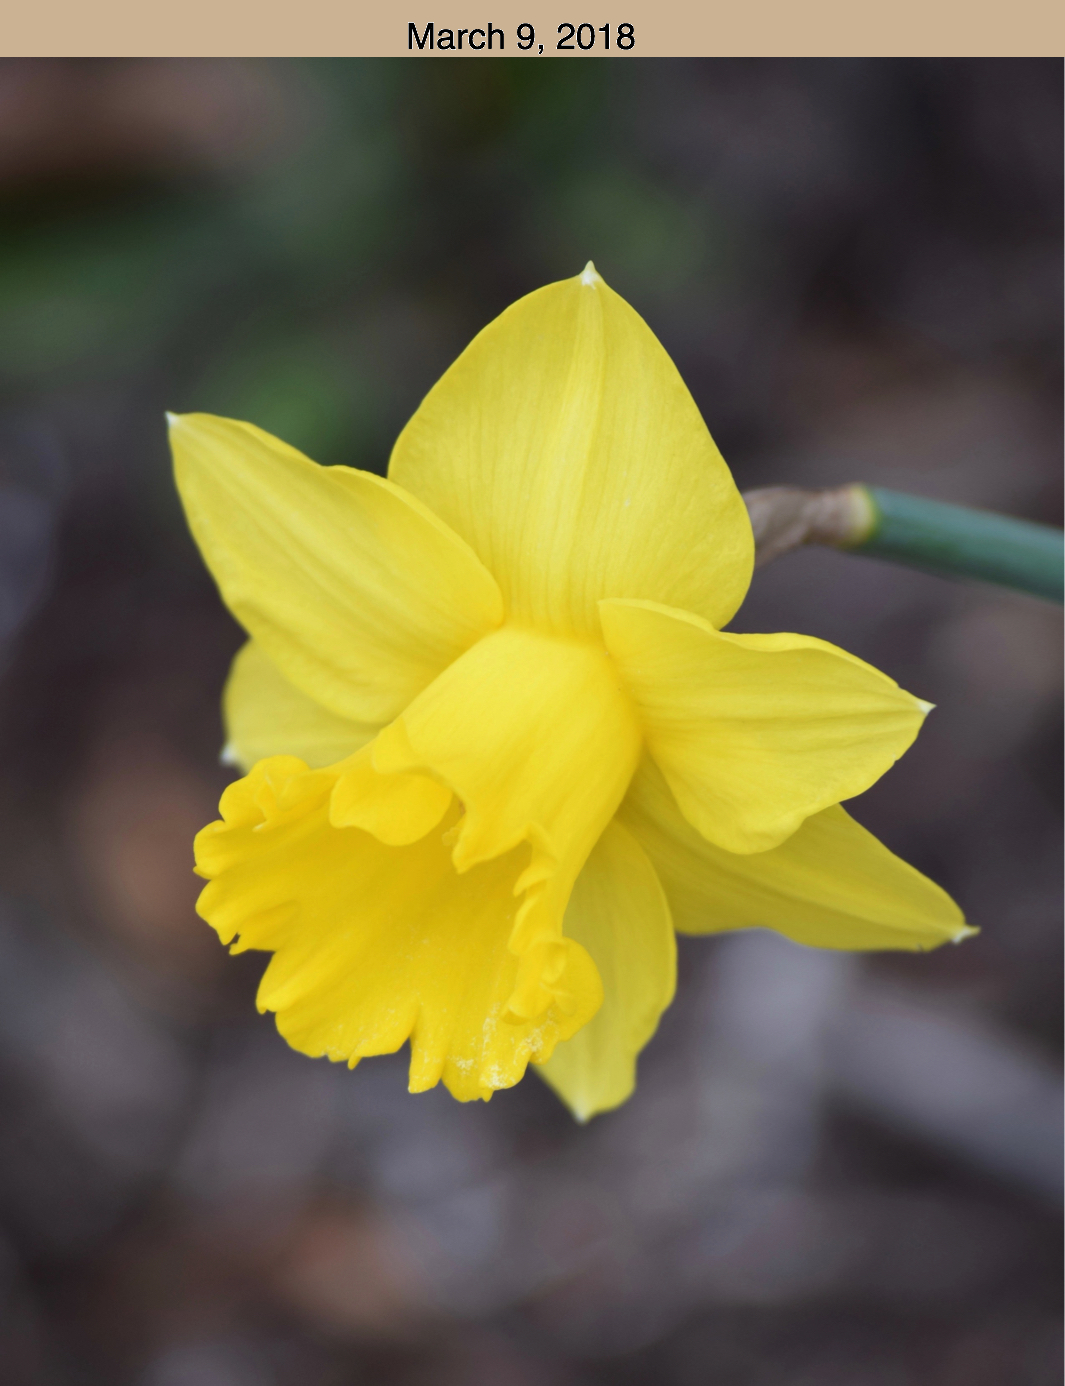 Daffodil March 9, 2018.jpg